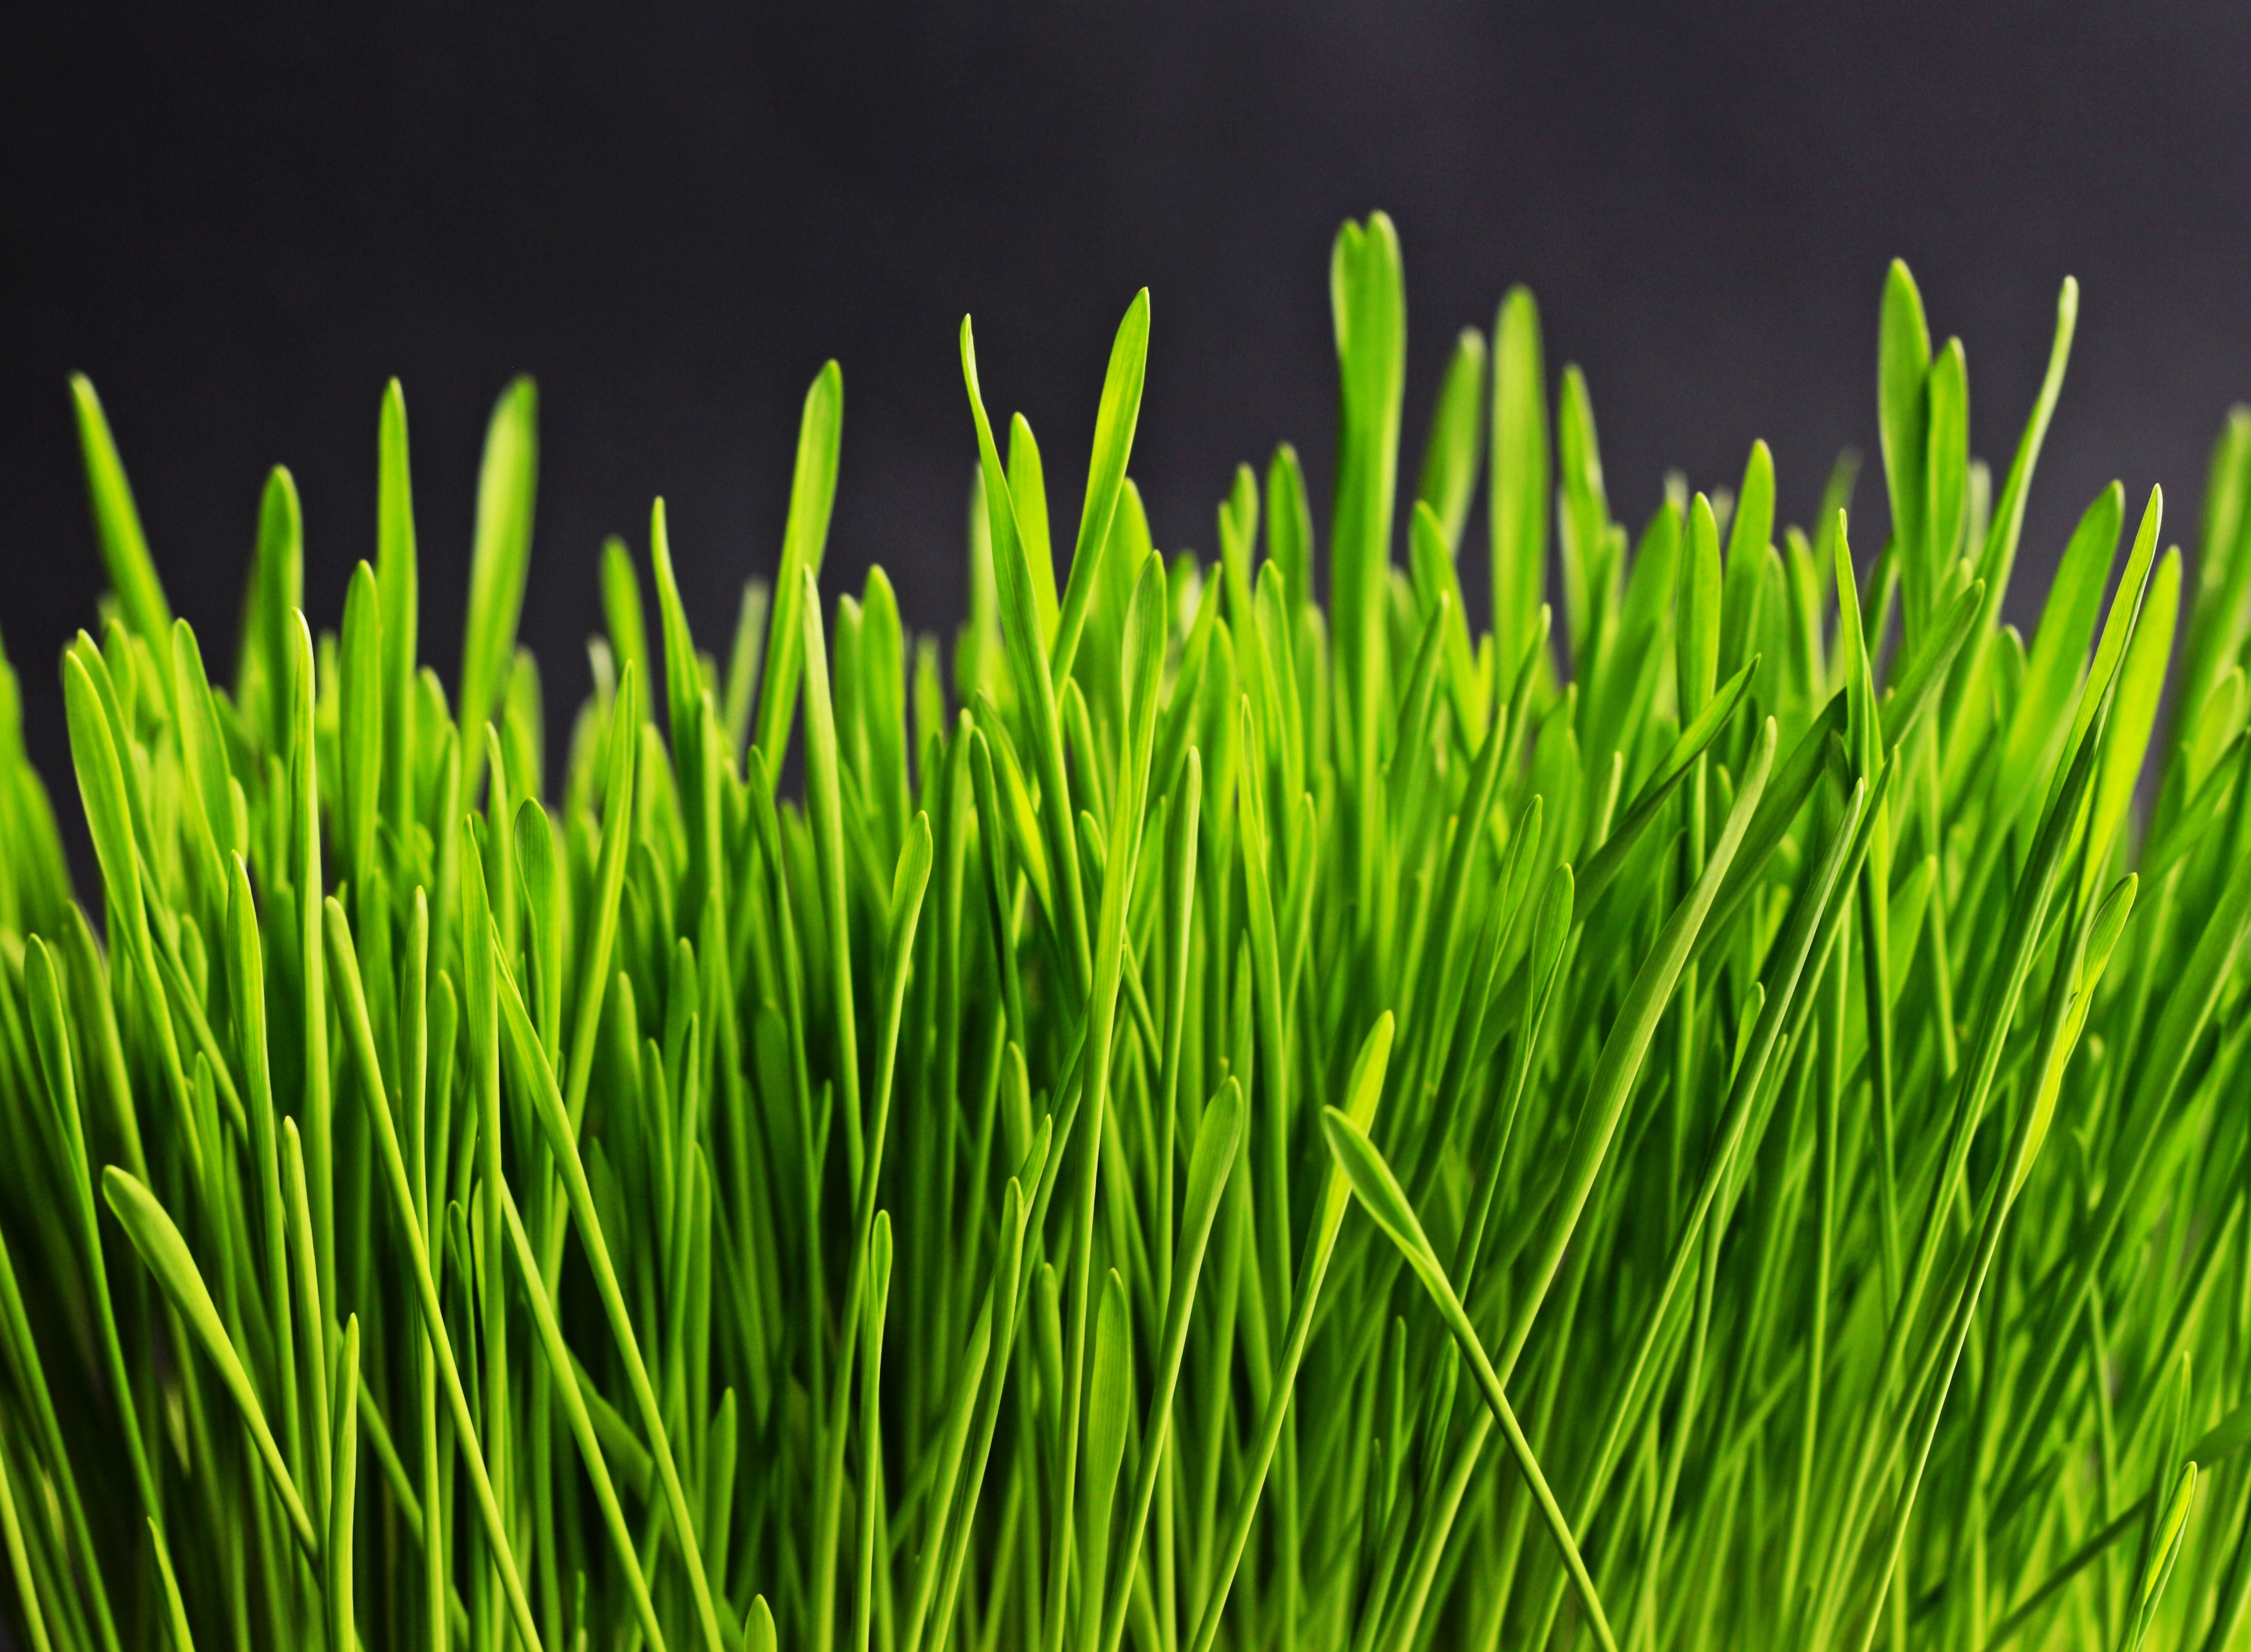 Фото бесплатно стебель растения, искусственный газон, семейство травянистых